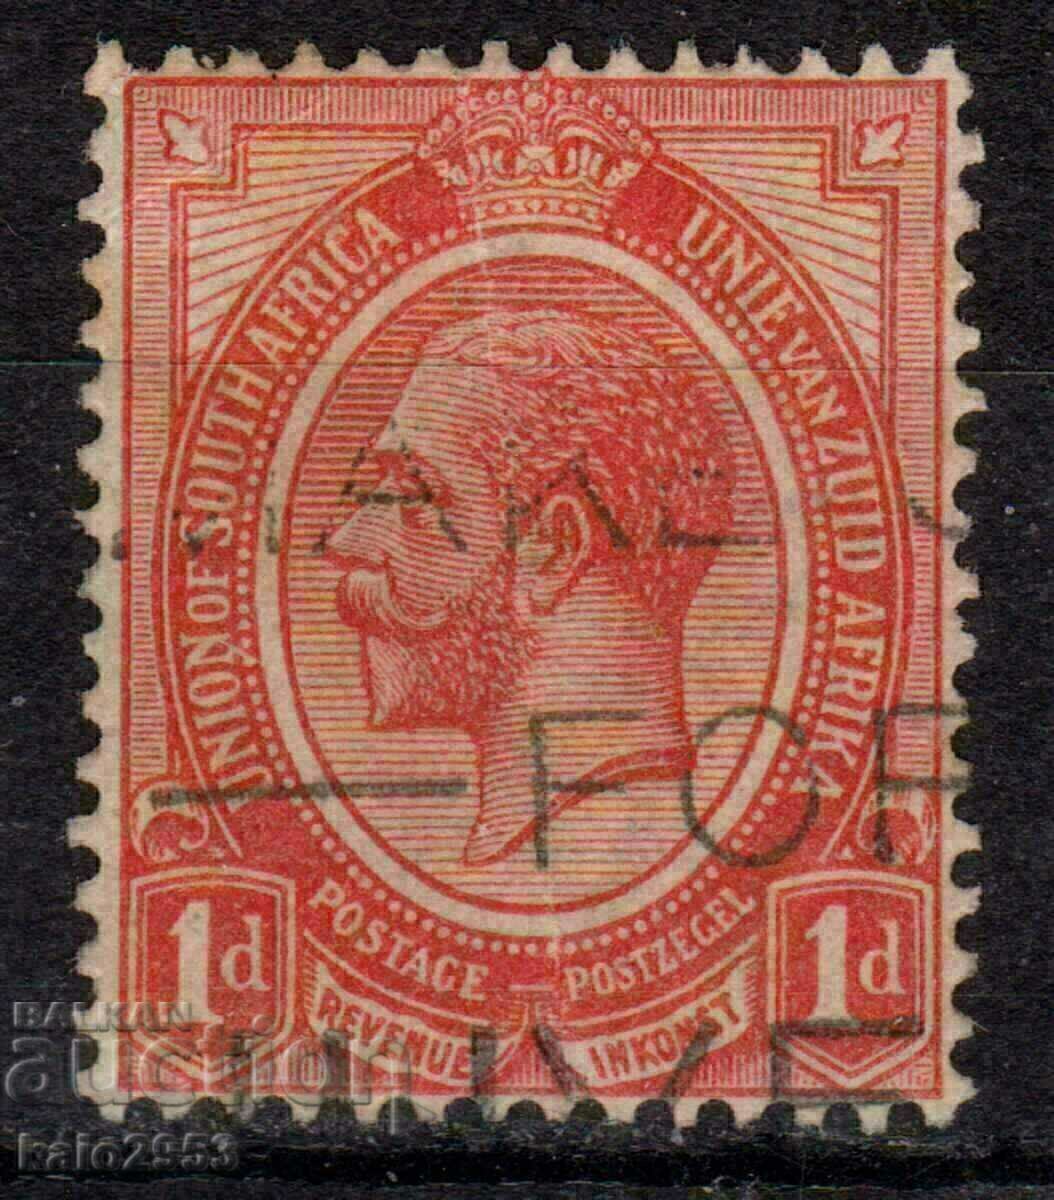 GB/Ю.Африка--1927-KGV-Редовна,клеймо